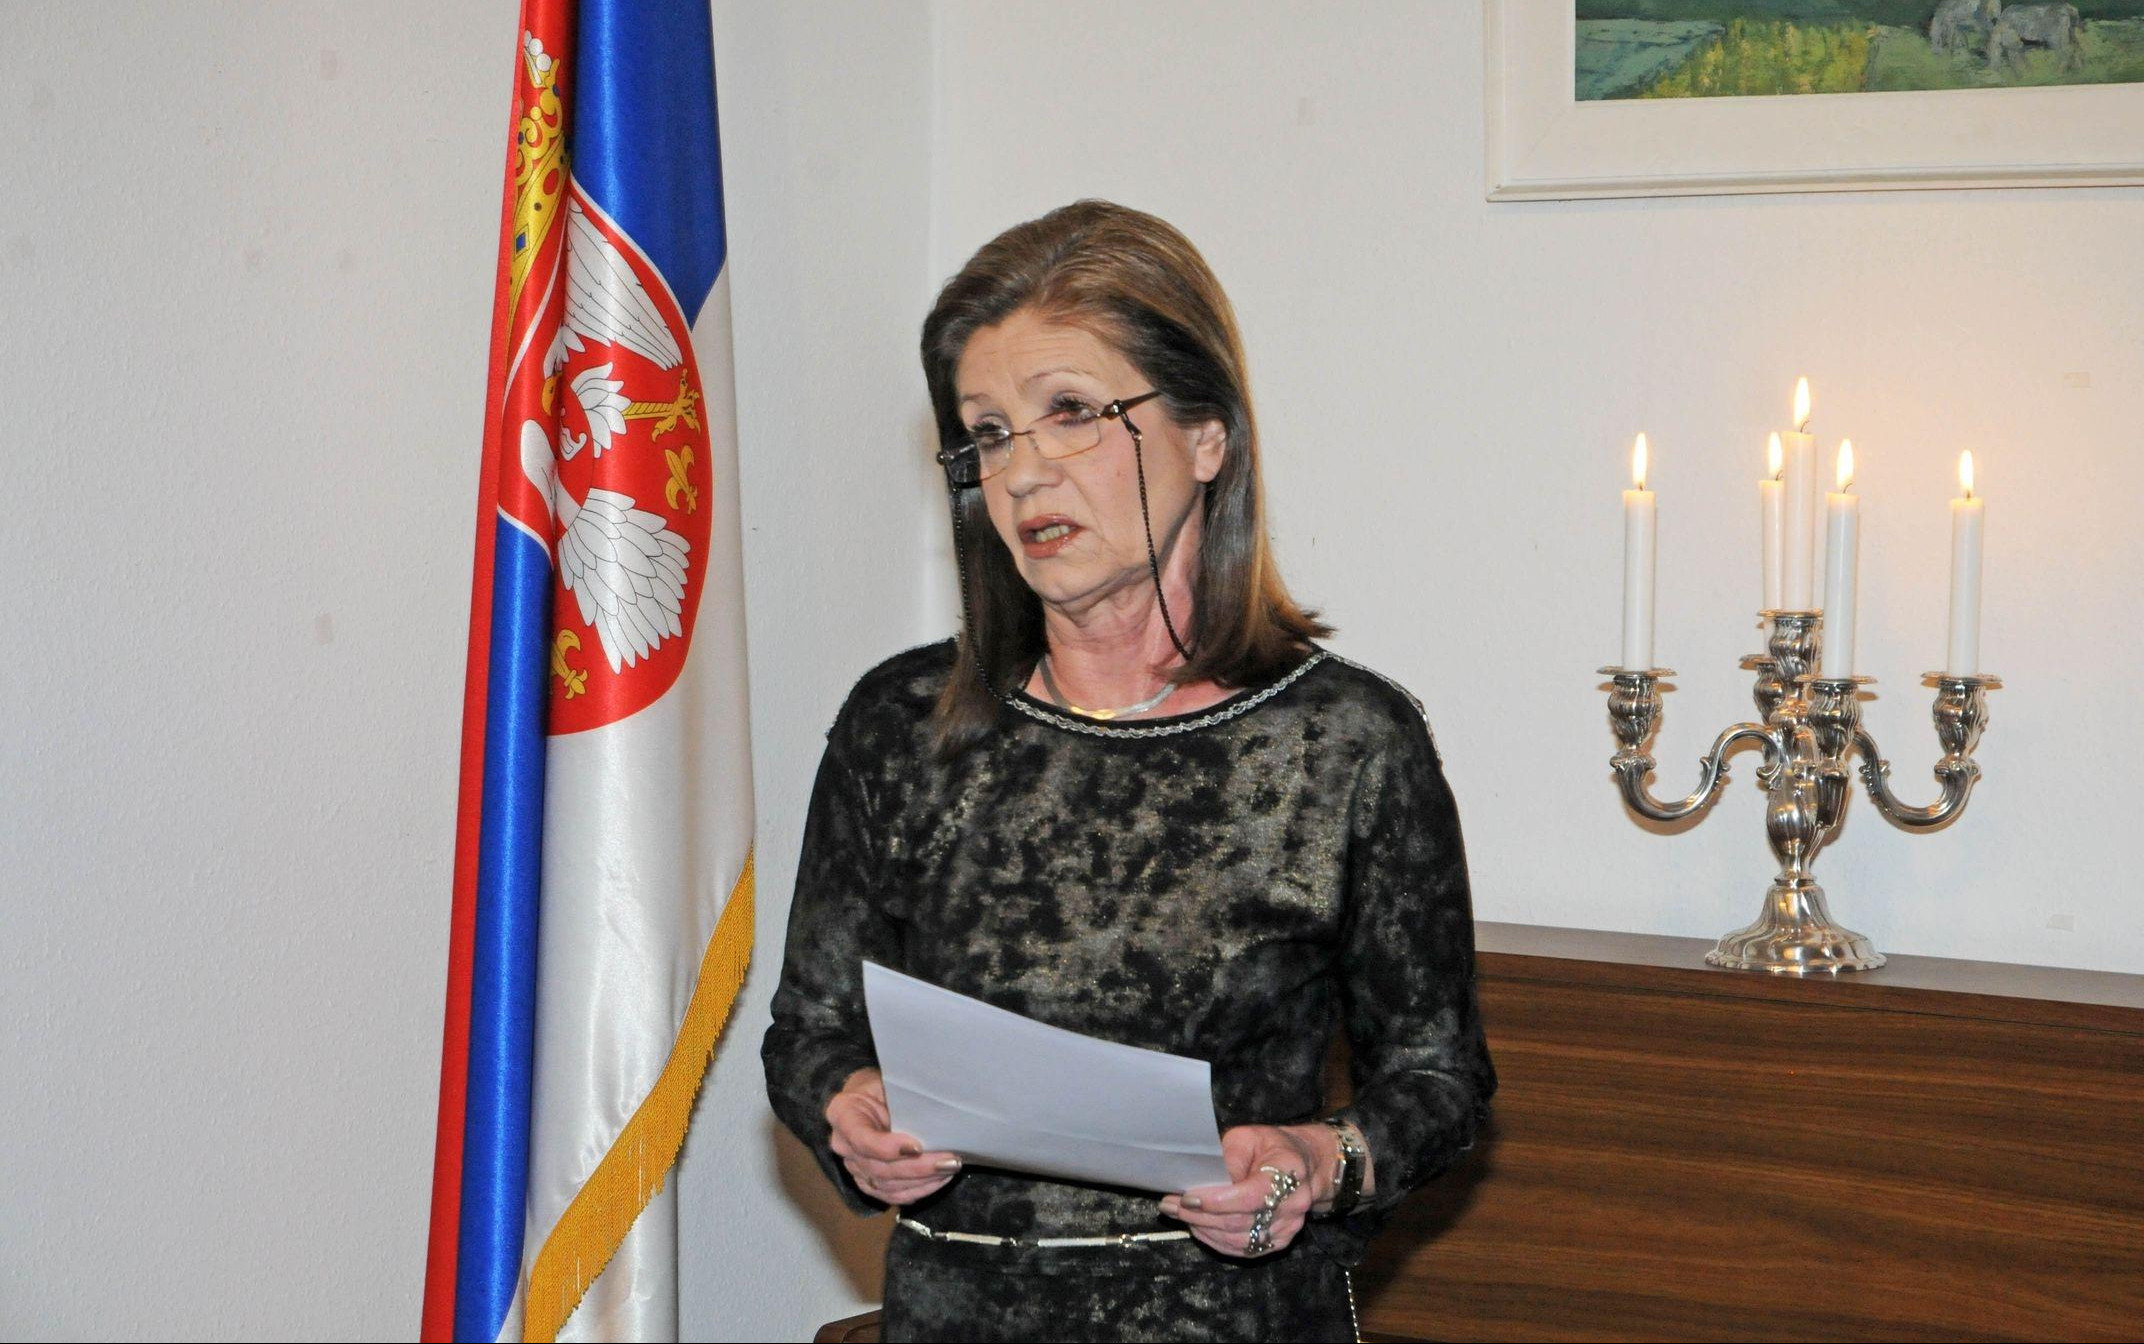 Opozvana ambasadorka Srbije u Danskoj